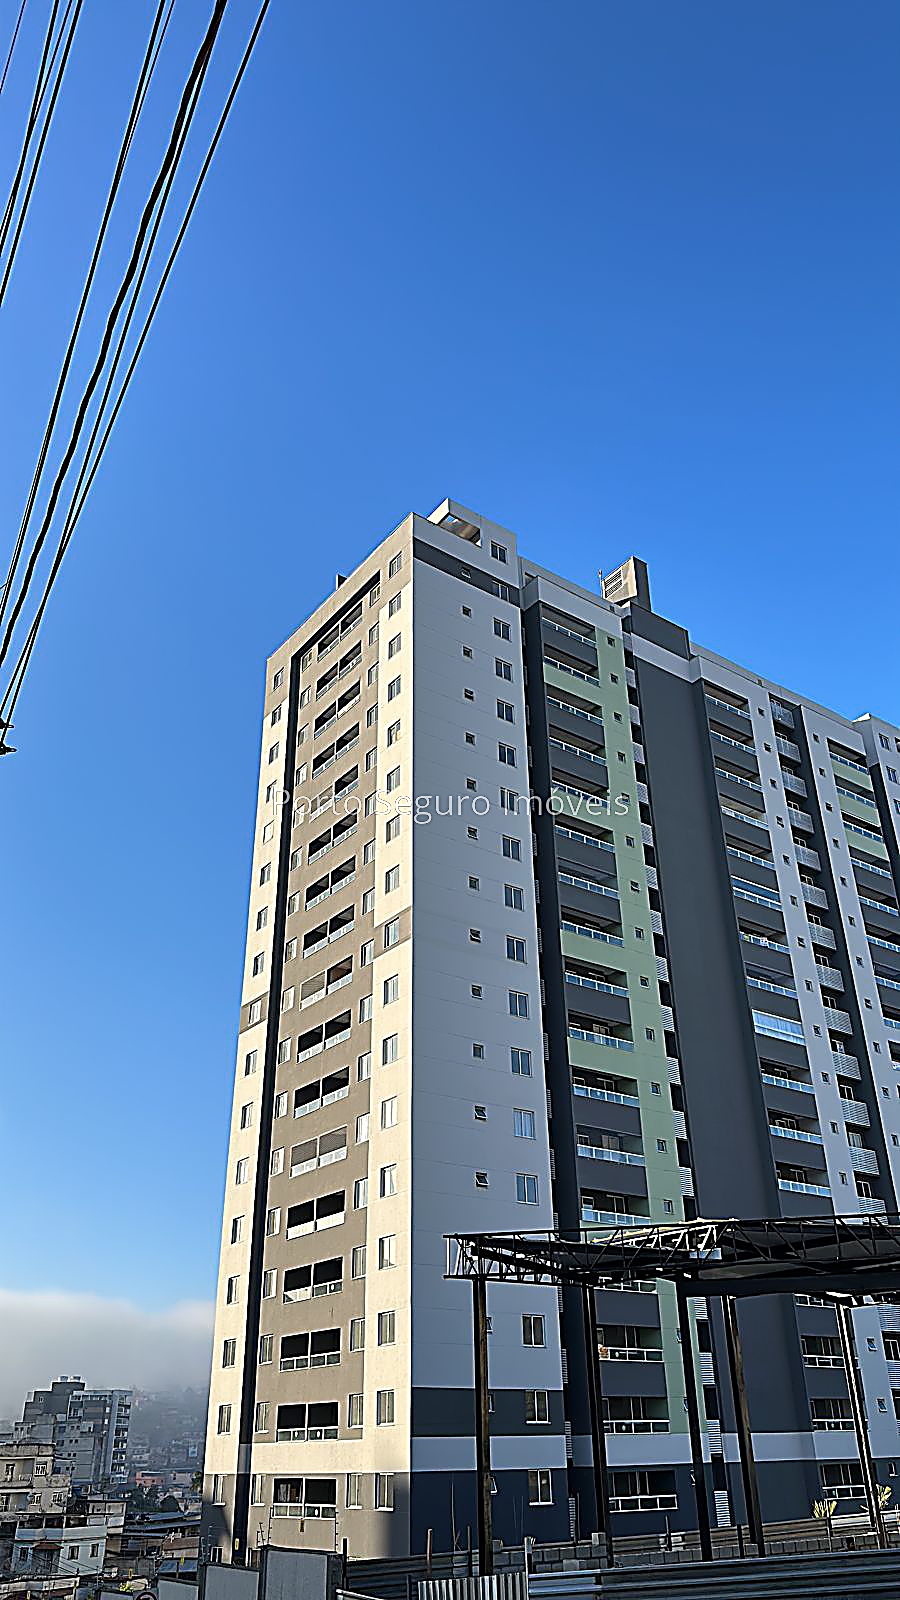 Apartamento à venda em Teixeiras, Juiz de Fora - MG - Foto 3